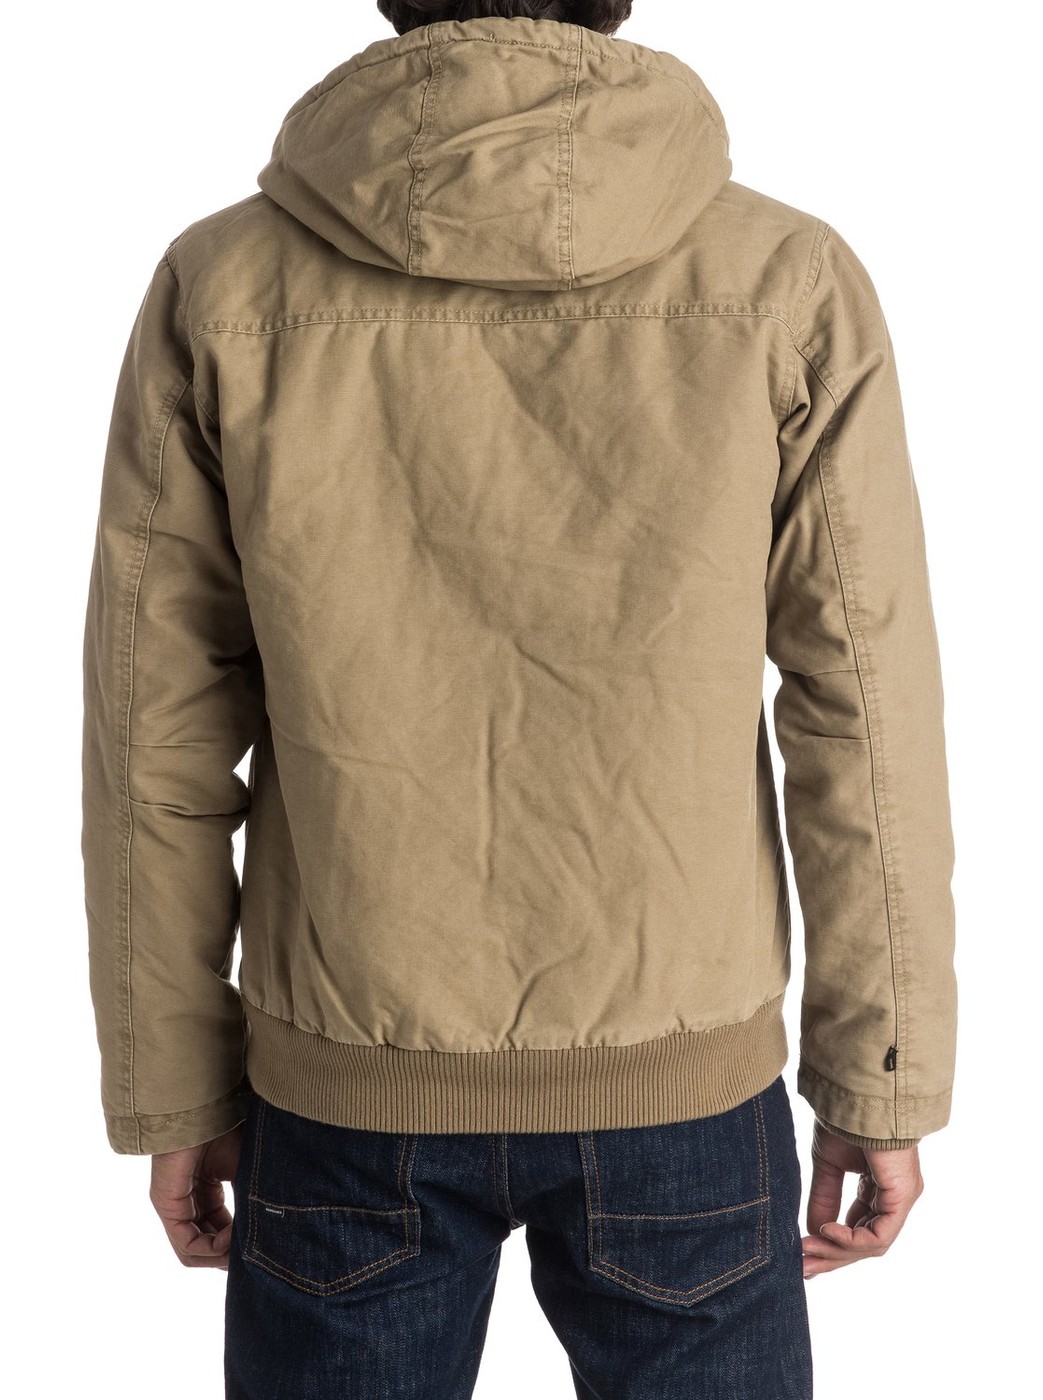 Куртка демисезонная - мужская куртка Quiksilver, XL, XL